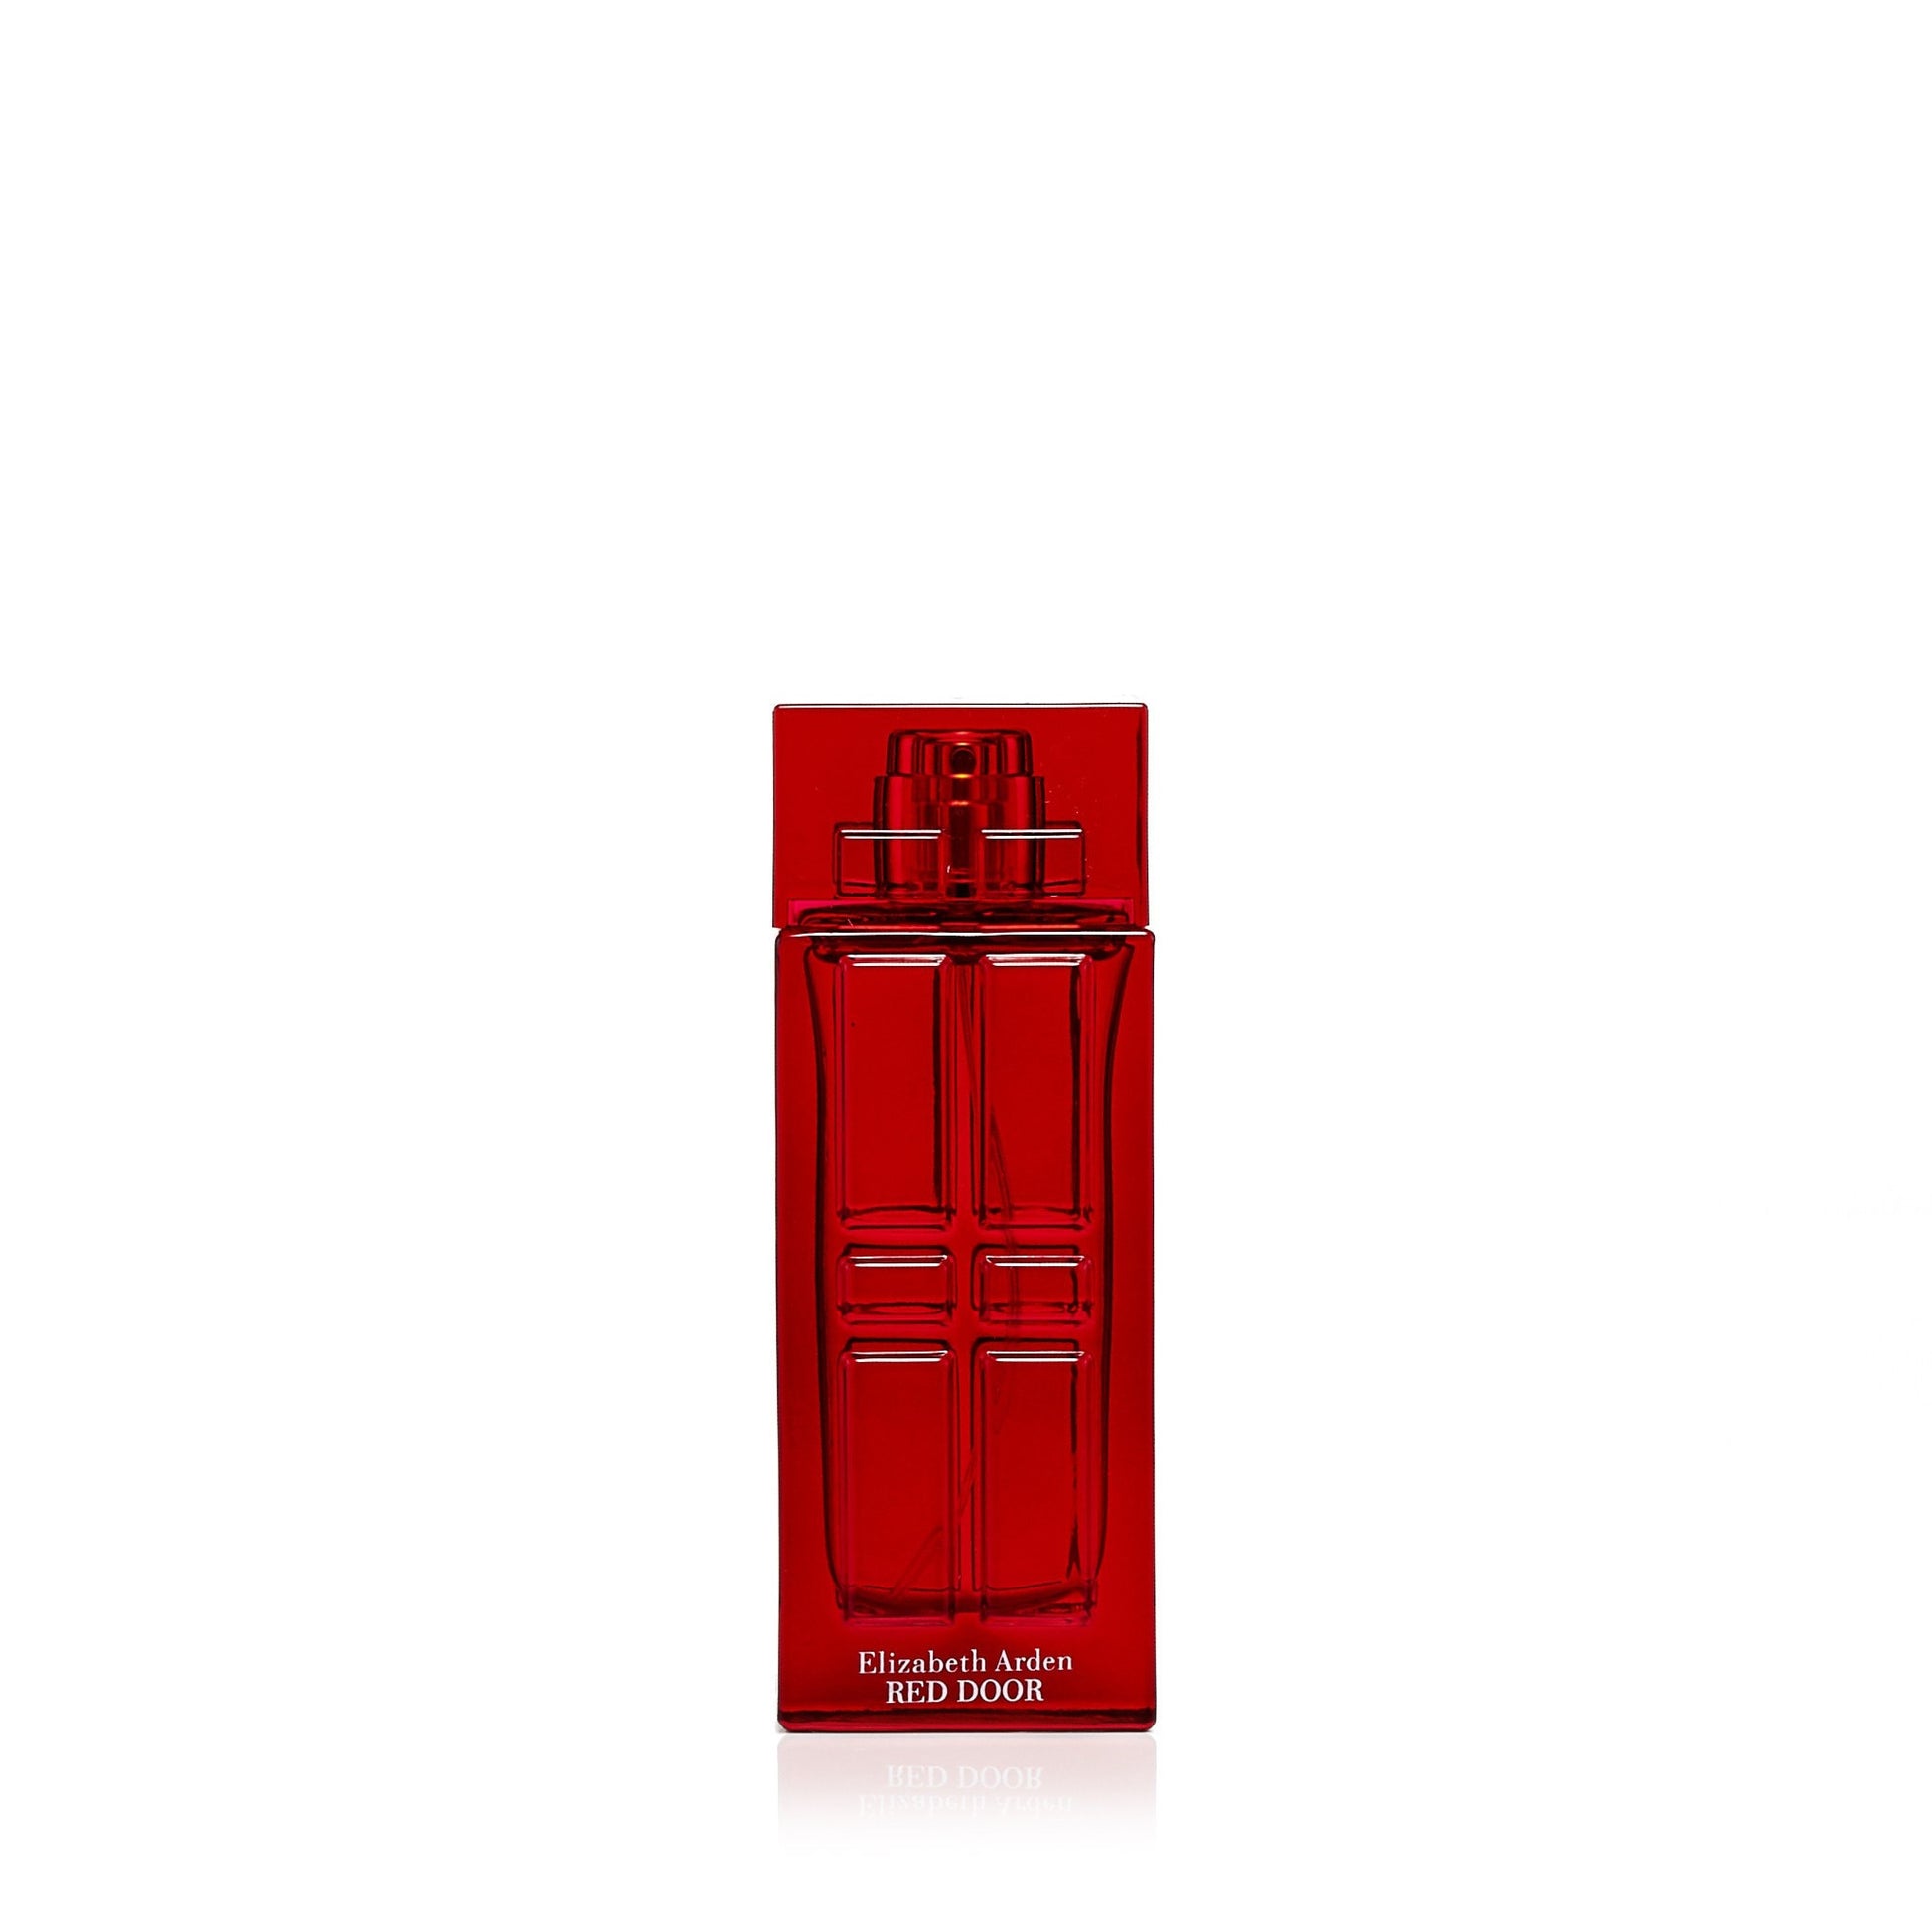 Red Door Eau de Toilette Spray for Women by Elizabeth Arden 1.0 oz. Click to open in modal